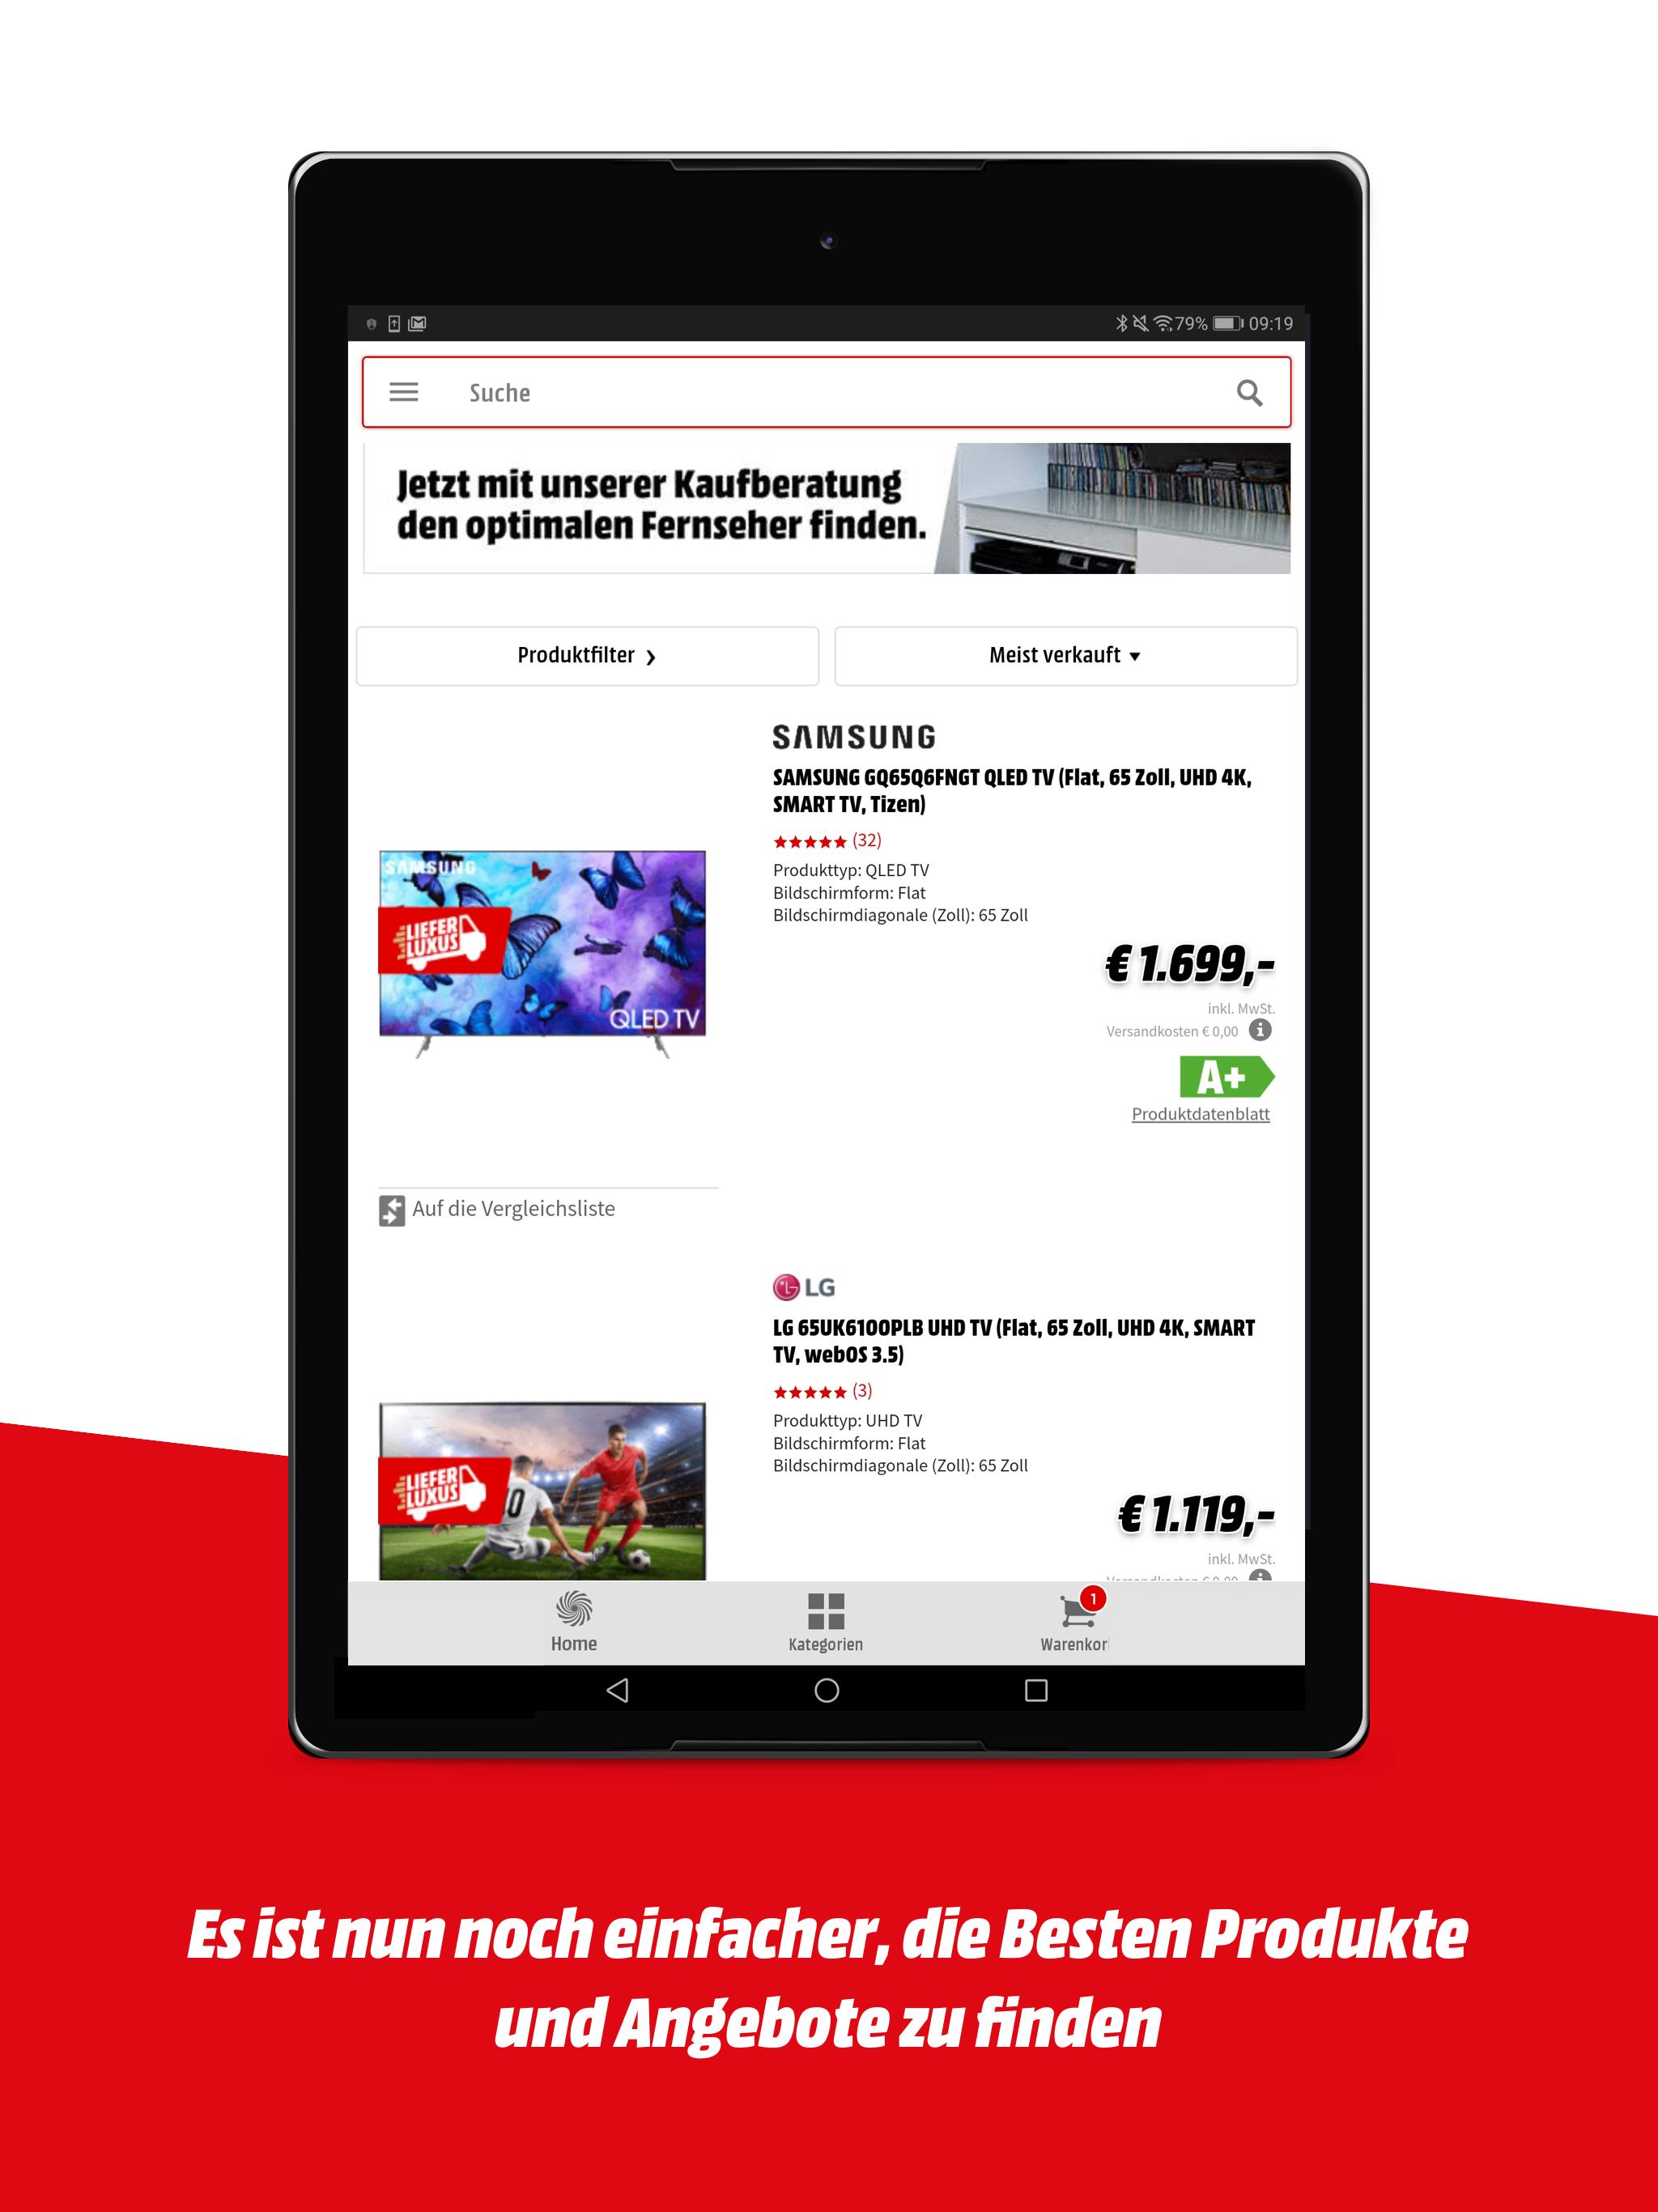 Media Markt Deutschland for Android - APK Download